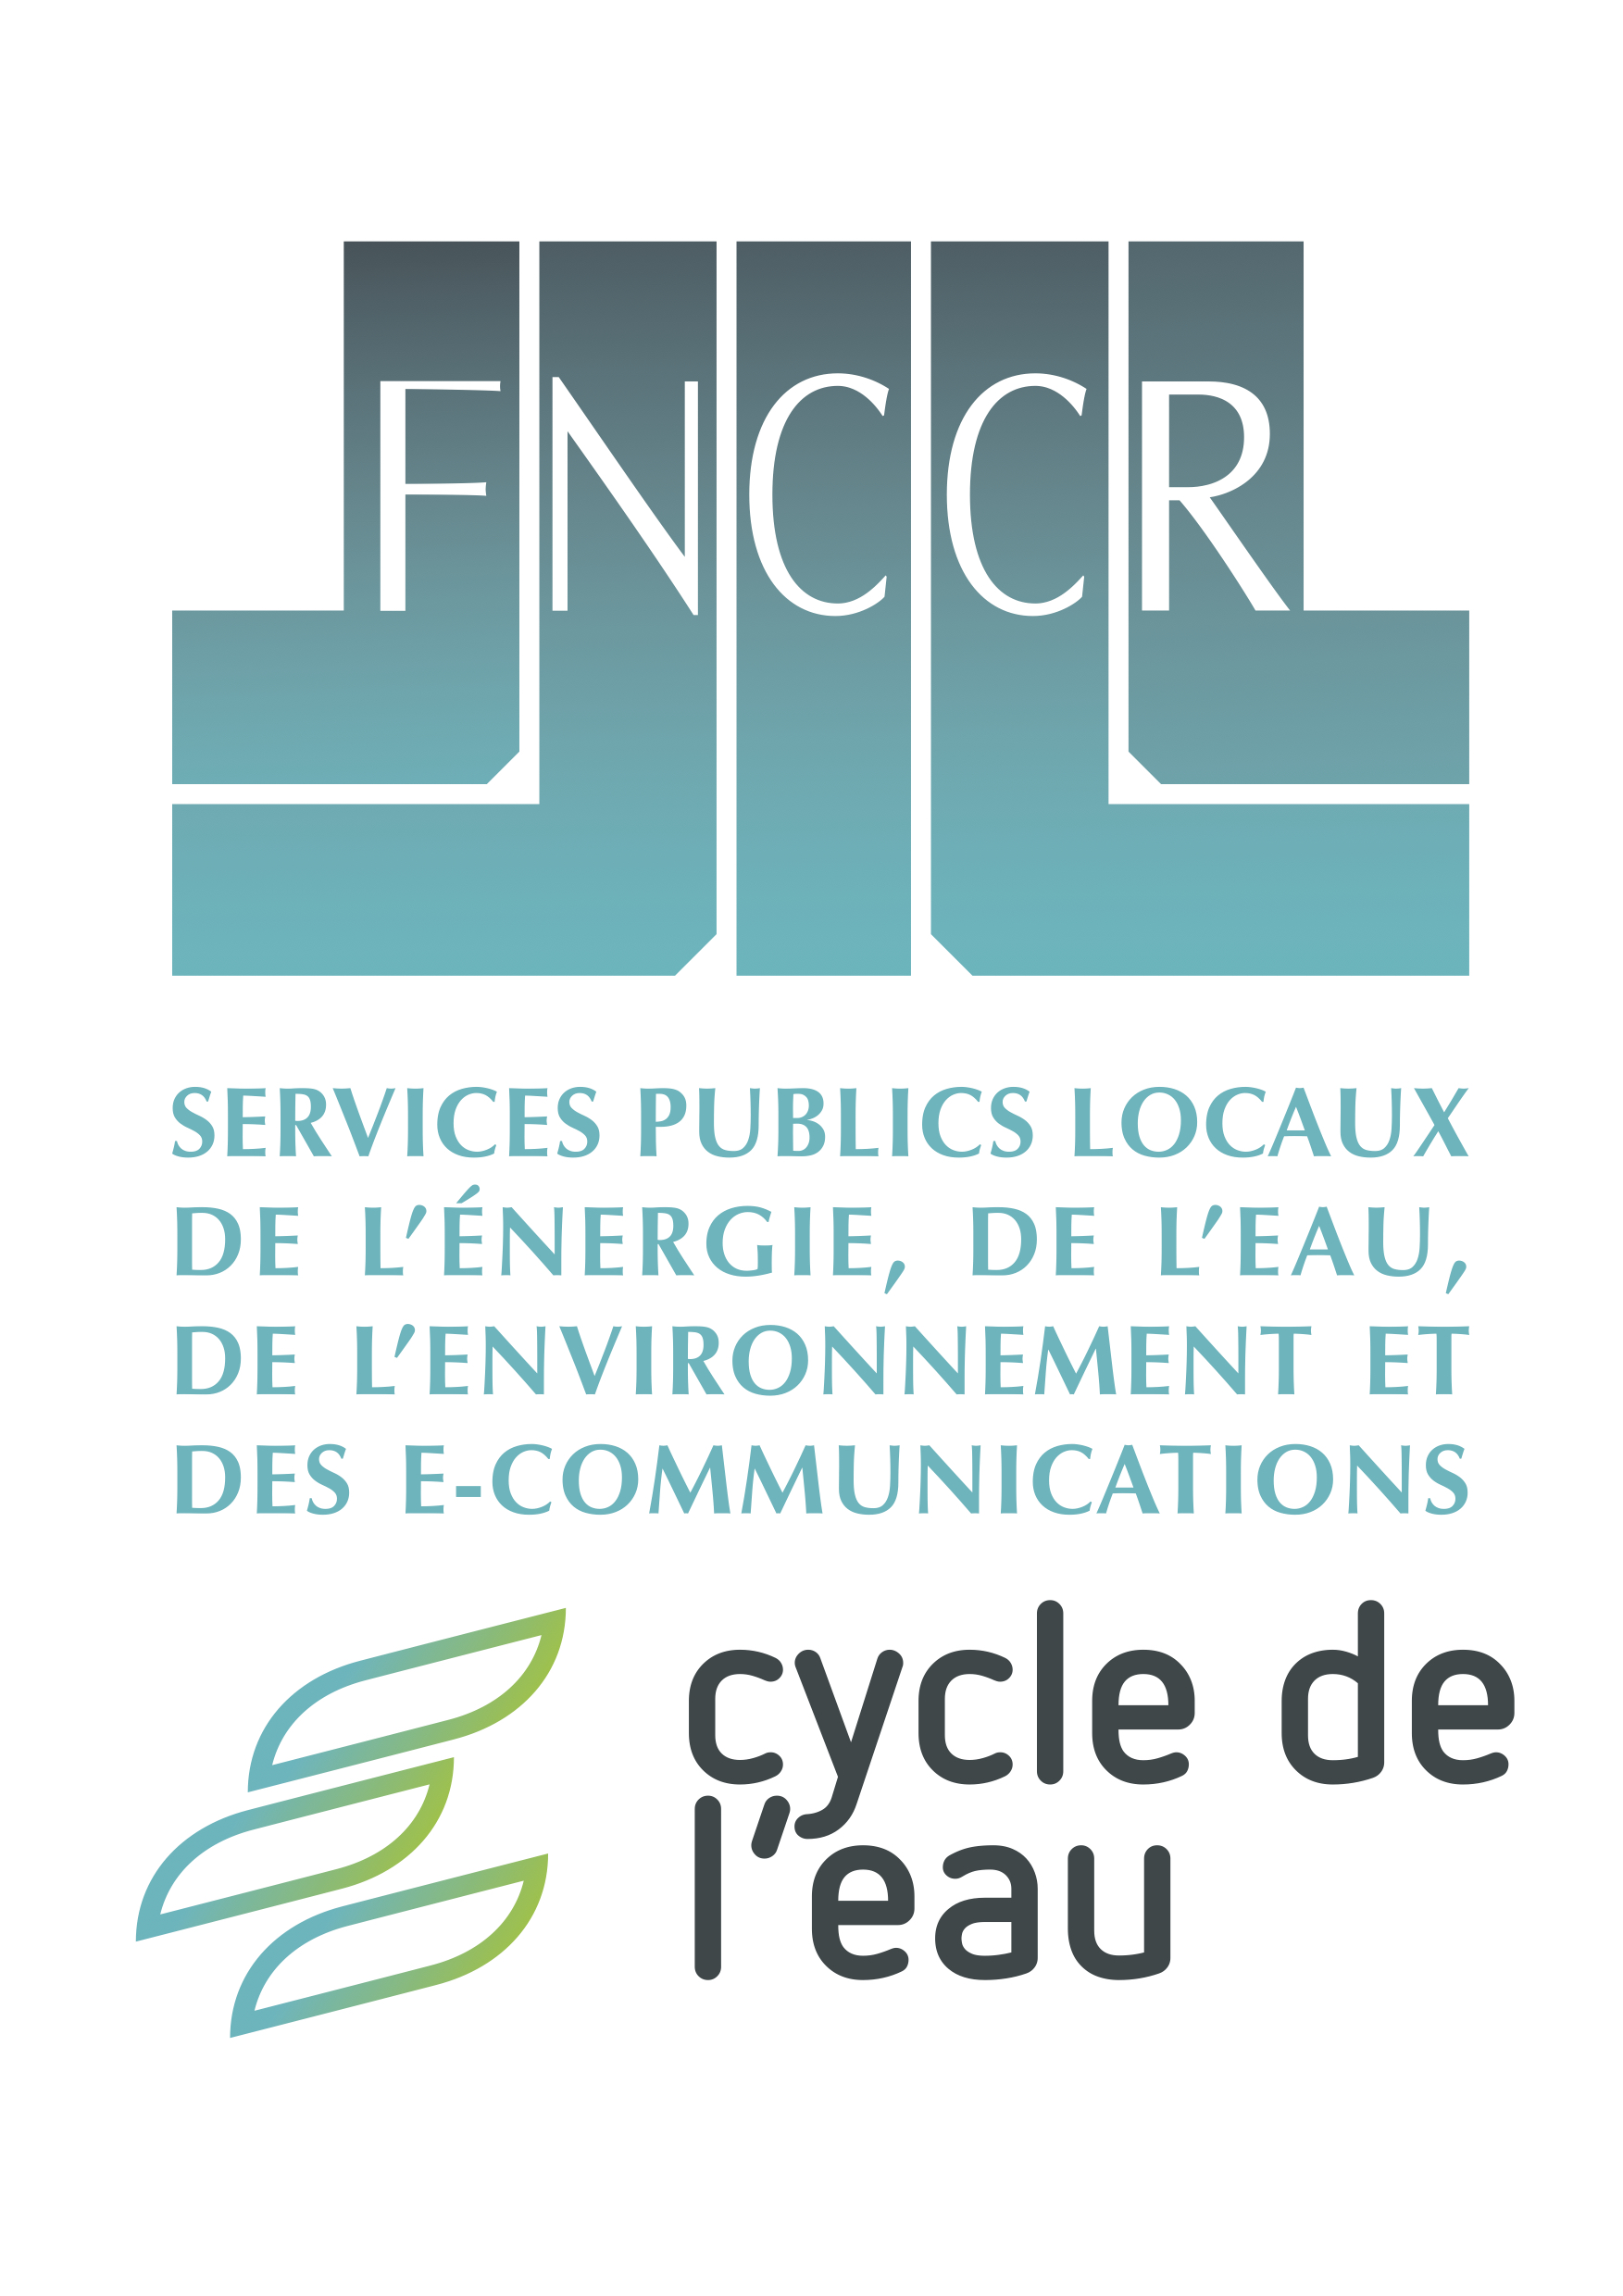 FNCCR logo